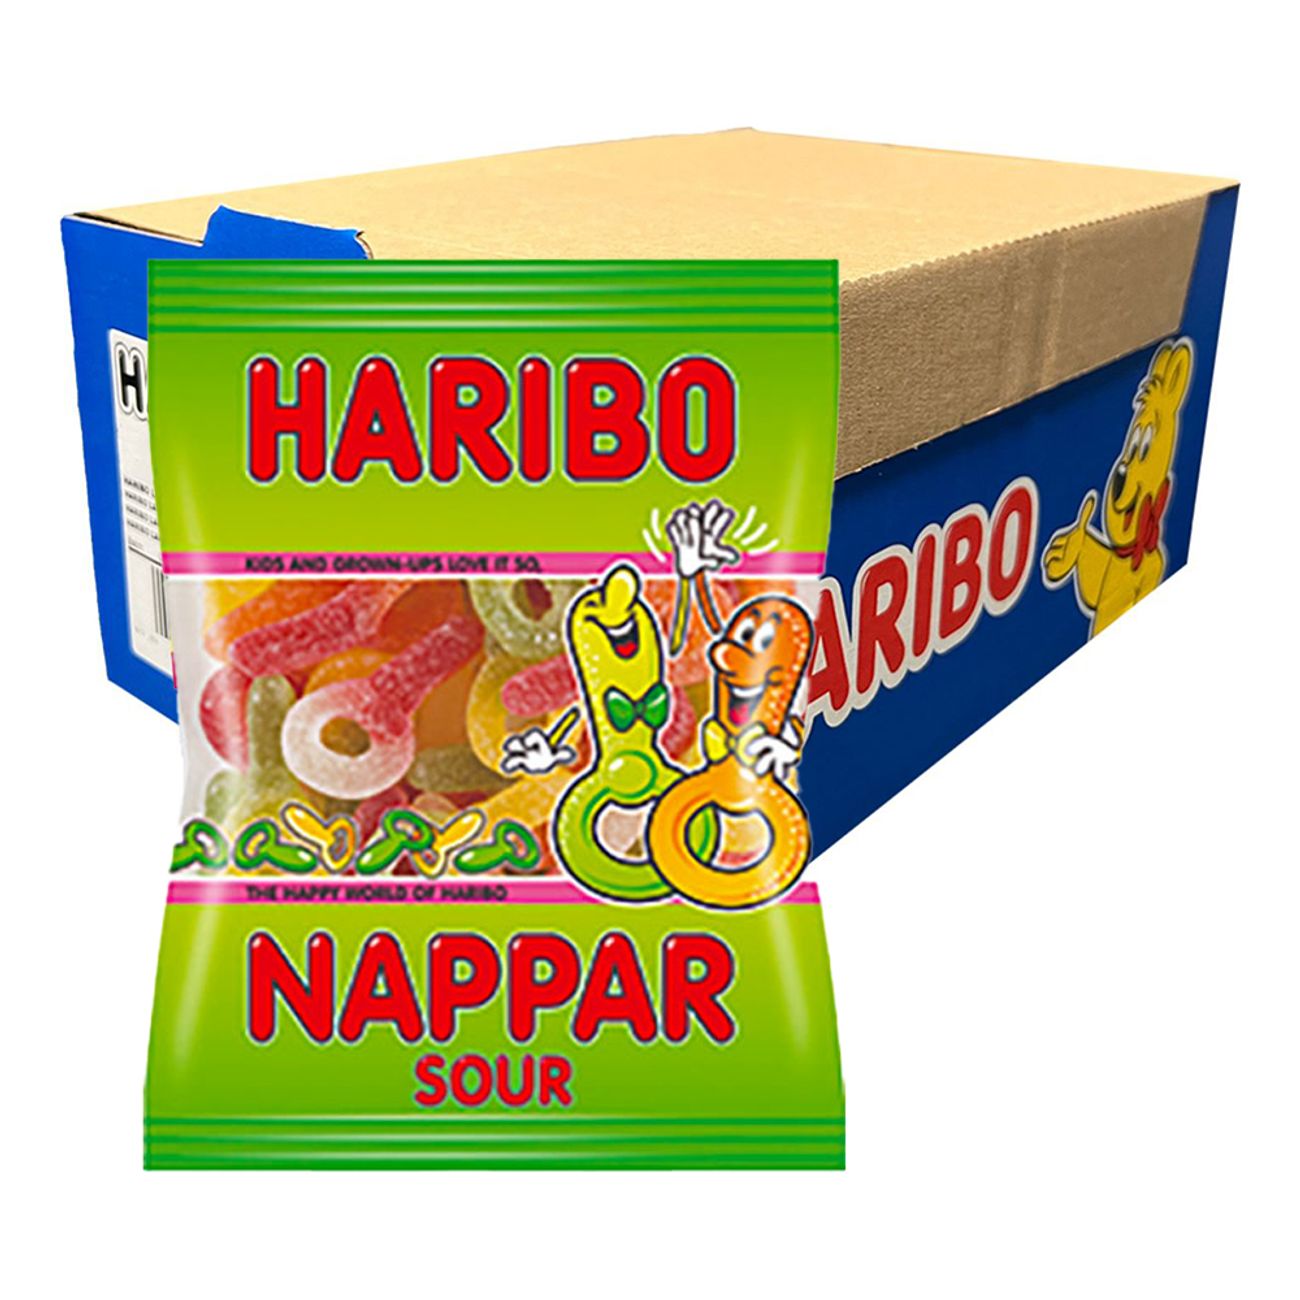 haribo-sura-nappar-storpack-44009-2